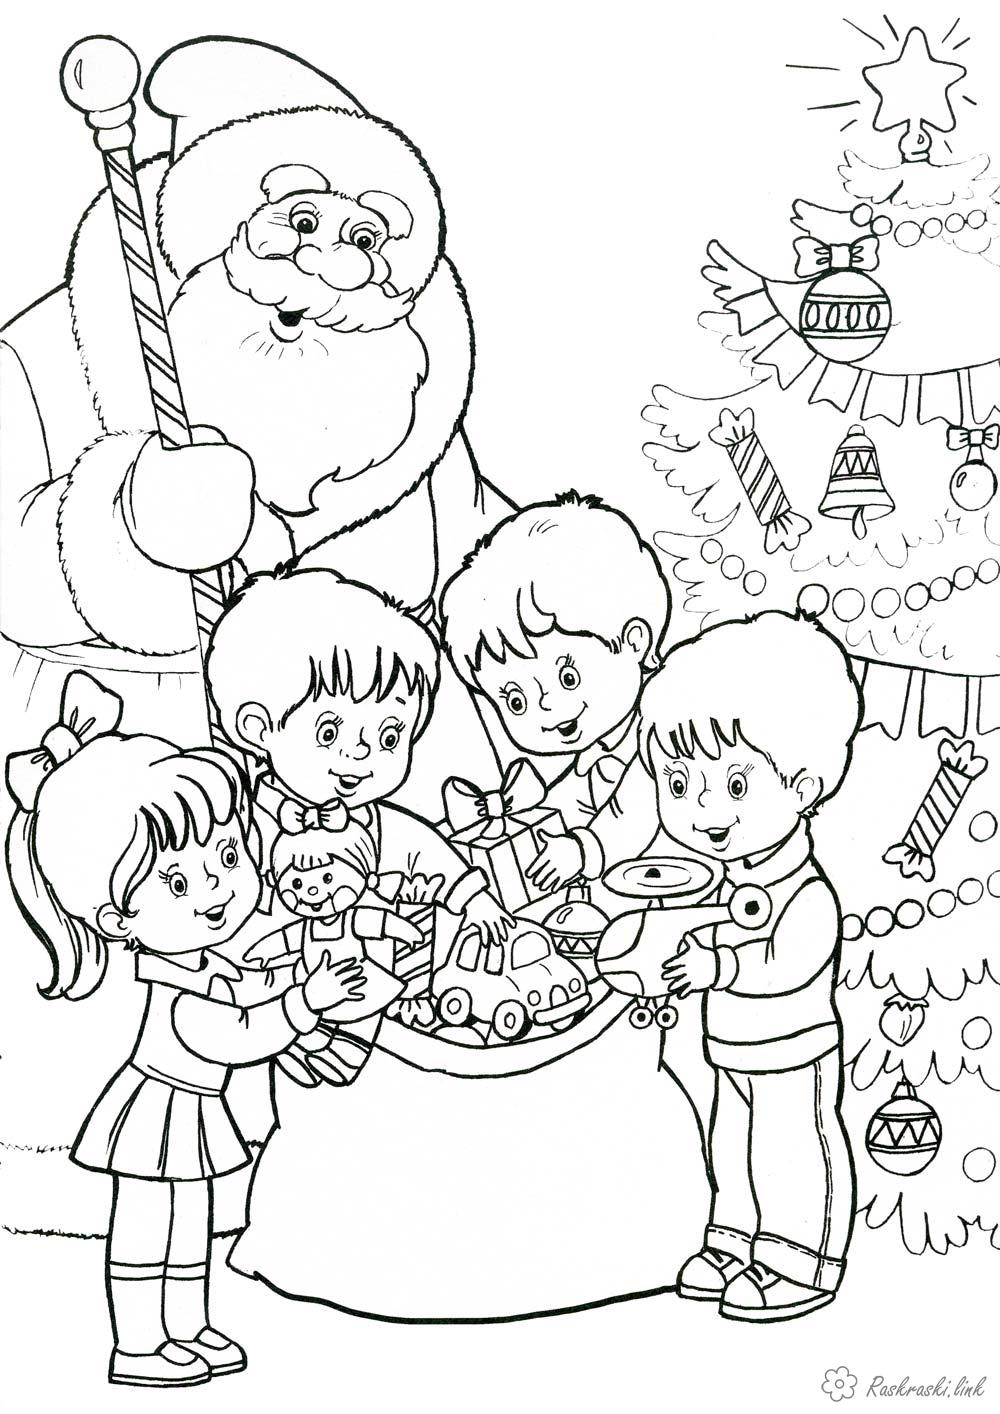 Розмальовки новорічна Дитяча новорічна раскарска Дід Мороз і дітлахи, що розбирають подарунки